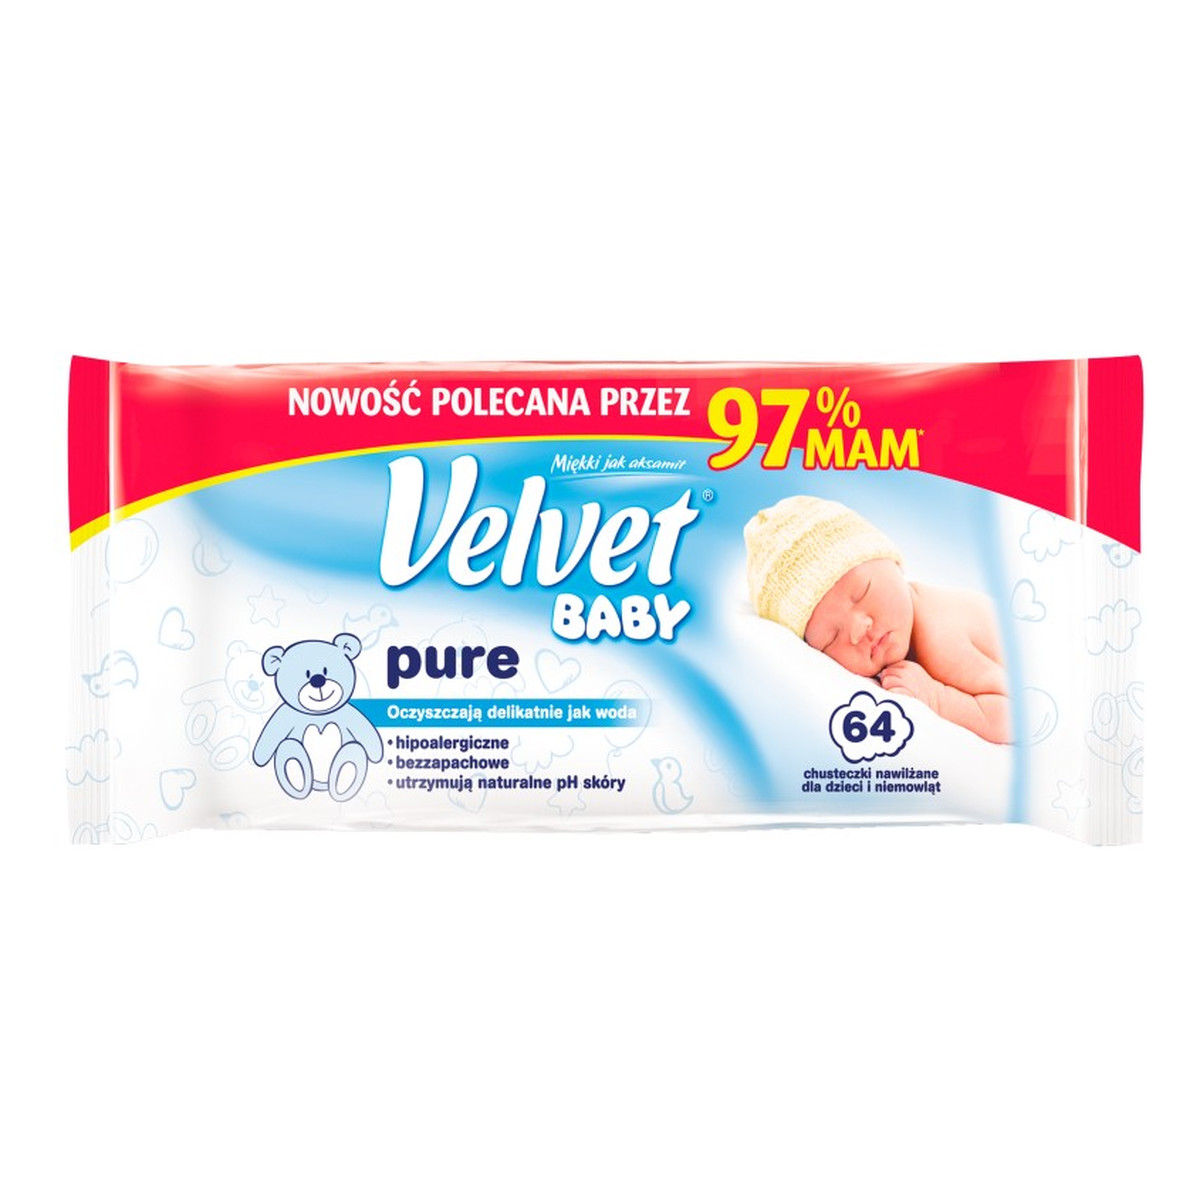 Velvet Baby Pure Chusteczki nawilżane dla dzieci i niemowląt 64szt